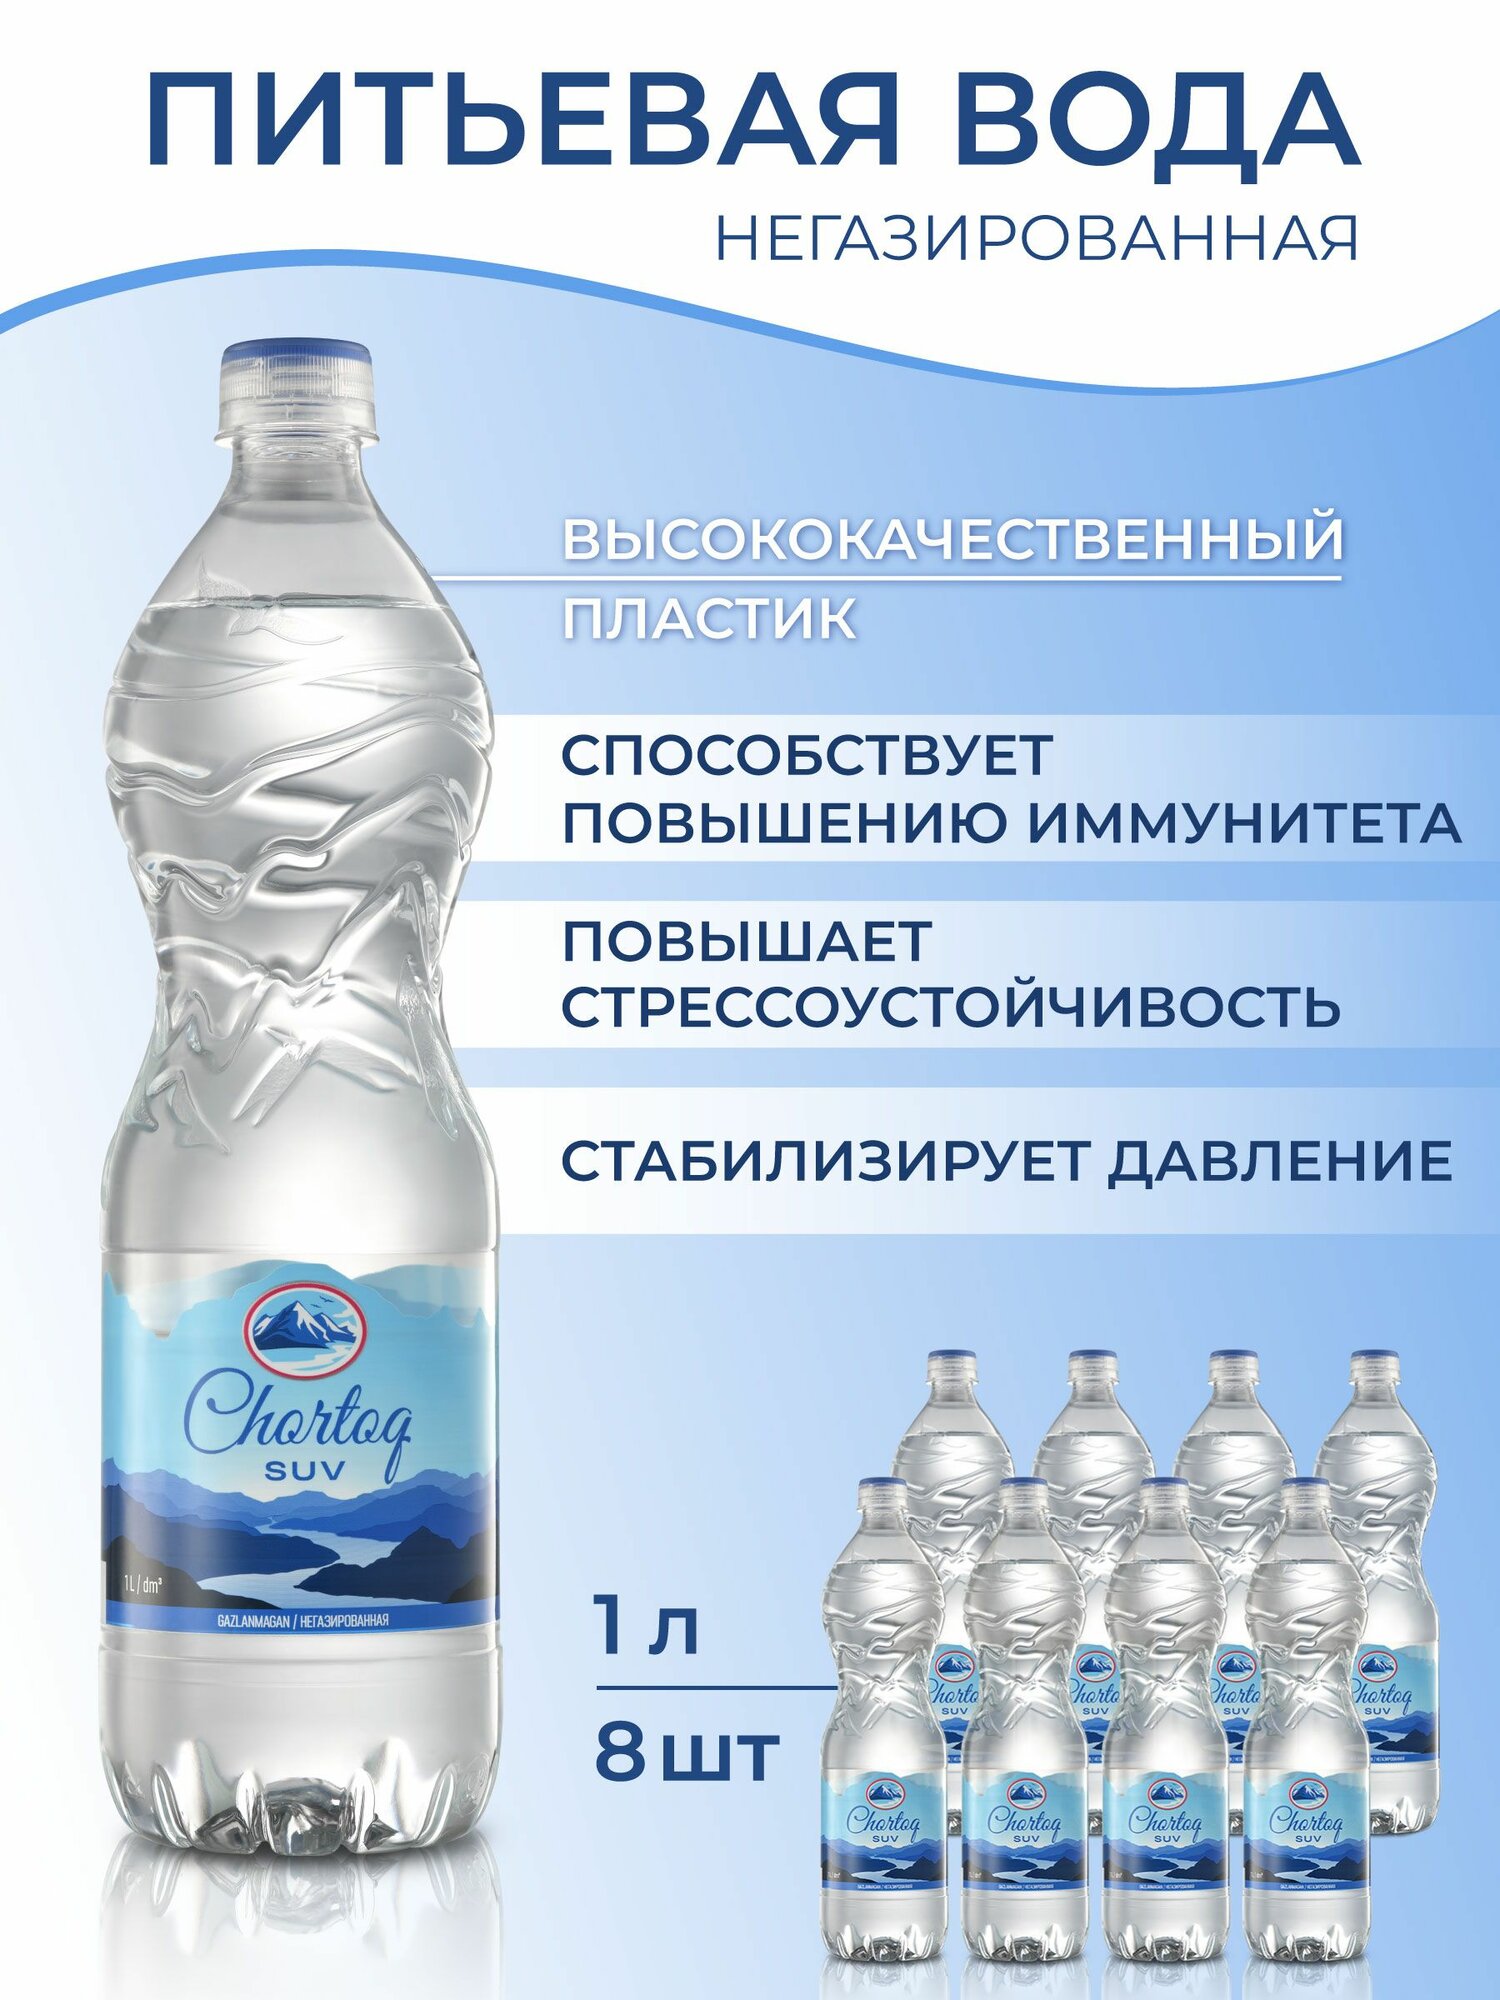 Питьевая негазированная вода Chortoq Suv Чартак, 8 бутылок в пластике по 1 л ПЭТ